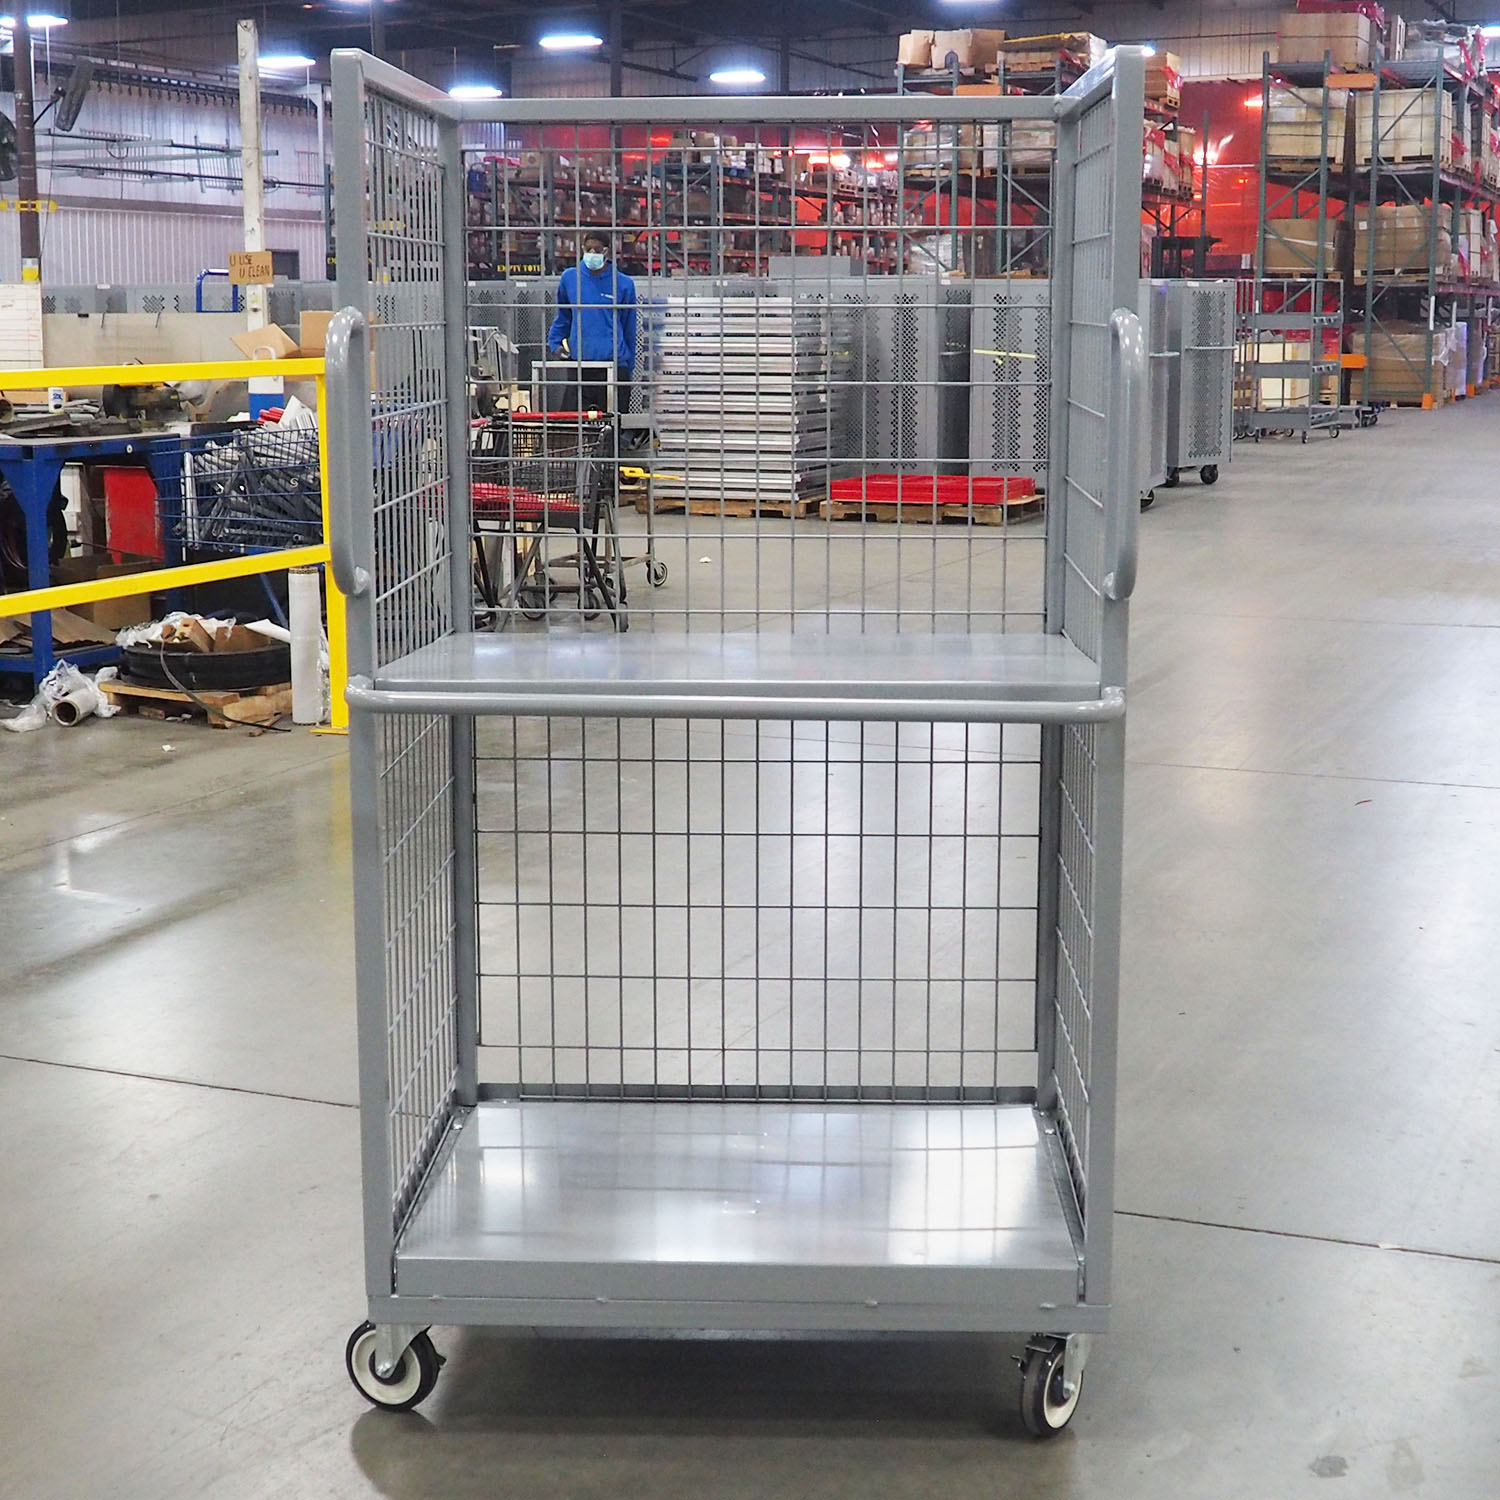 Cage Carts & Aluminum Deck Order Picker Carts